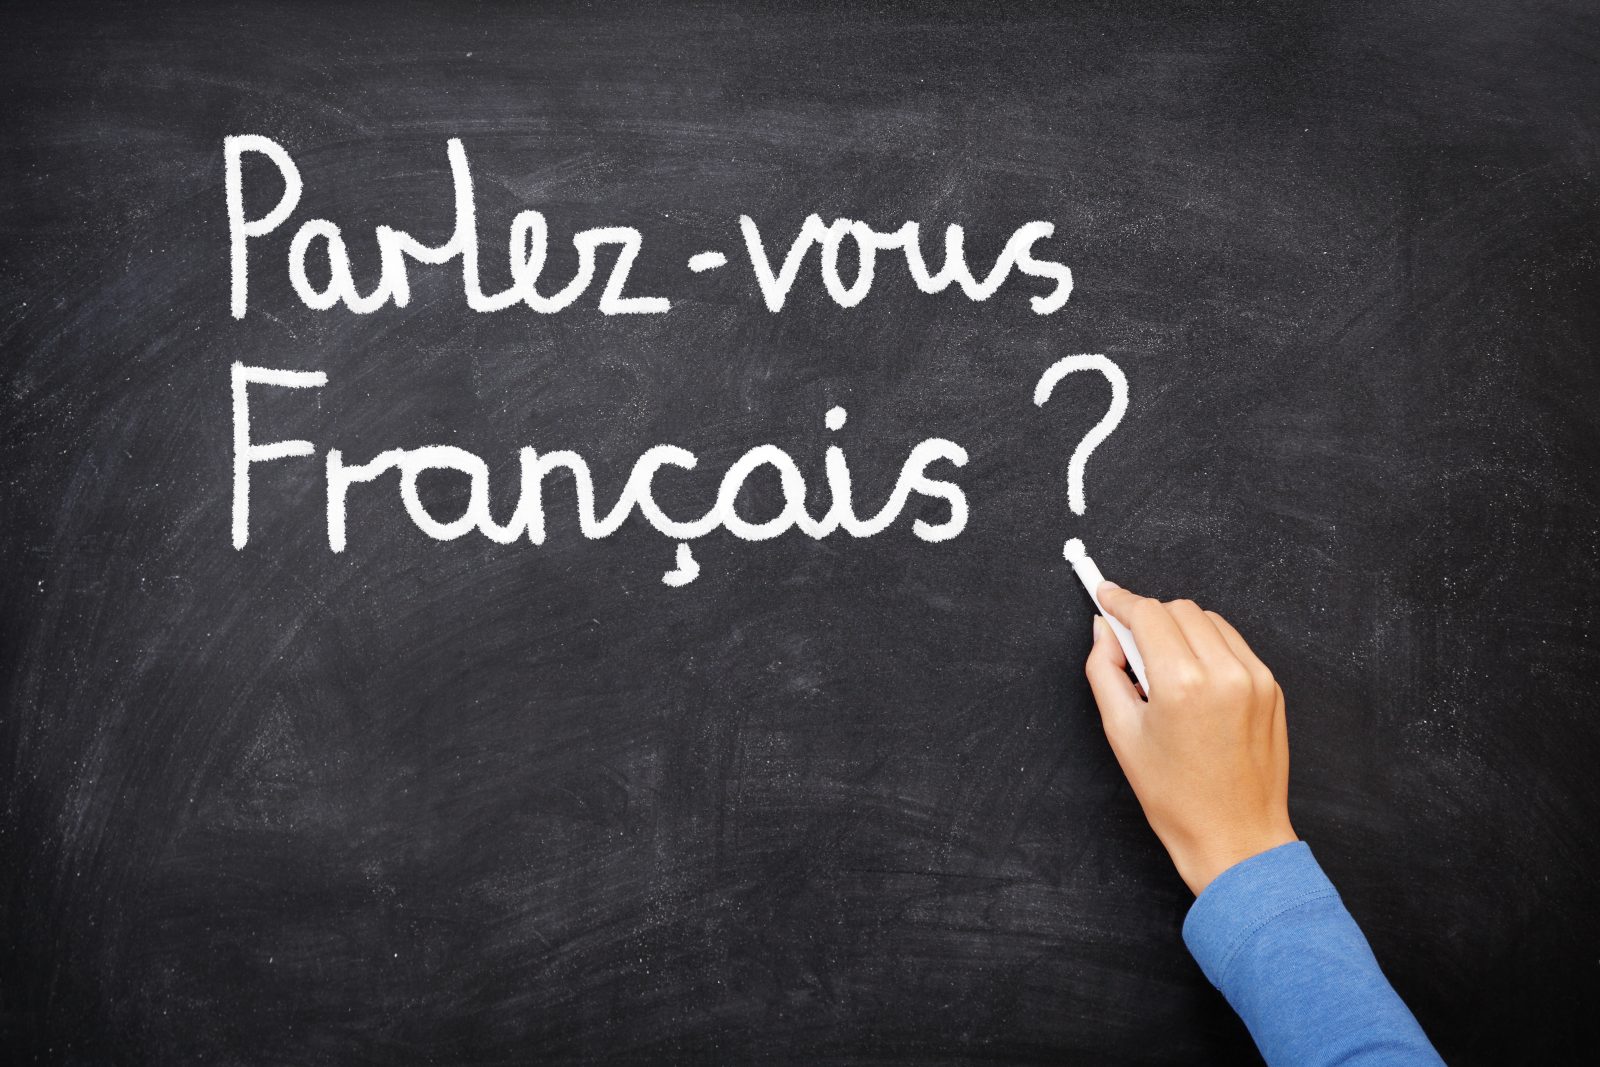 La SSJB veut promouvoir davantage la langue française dans les entreprises